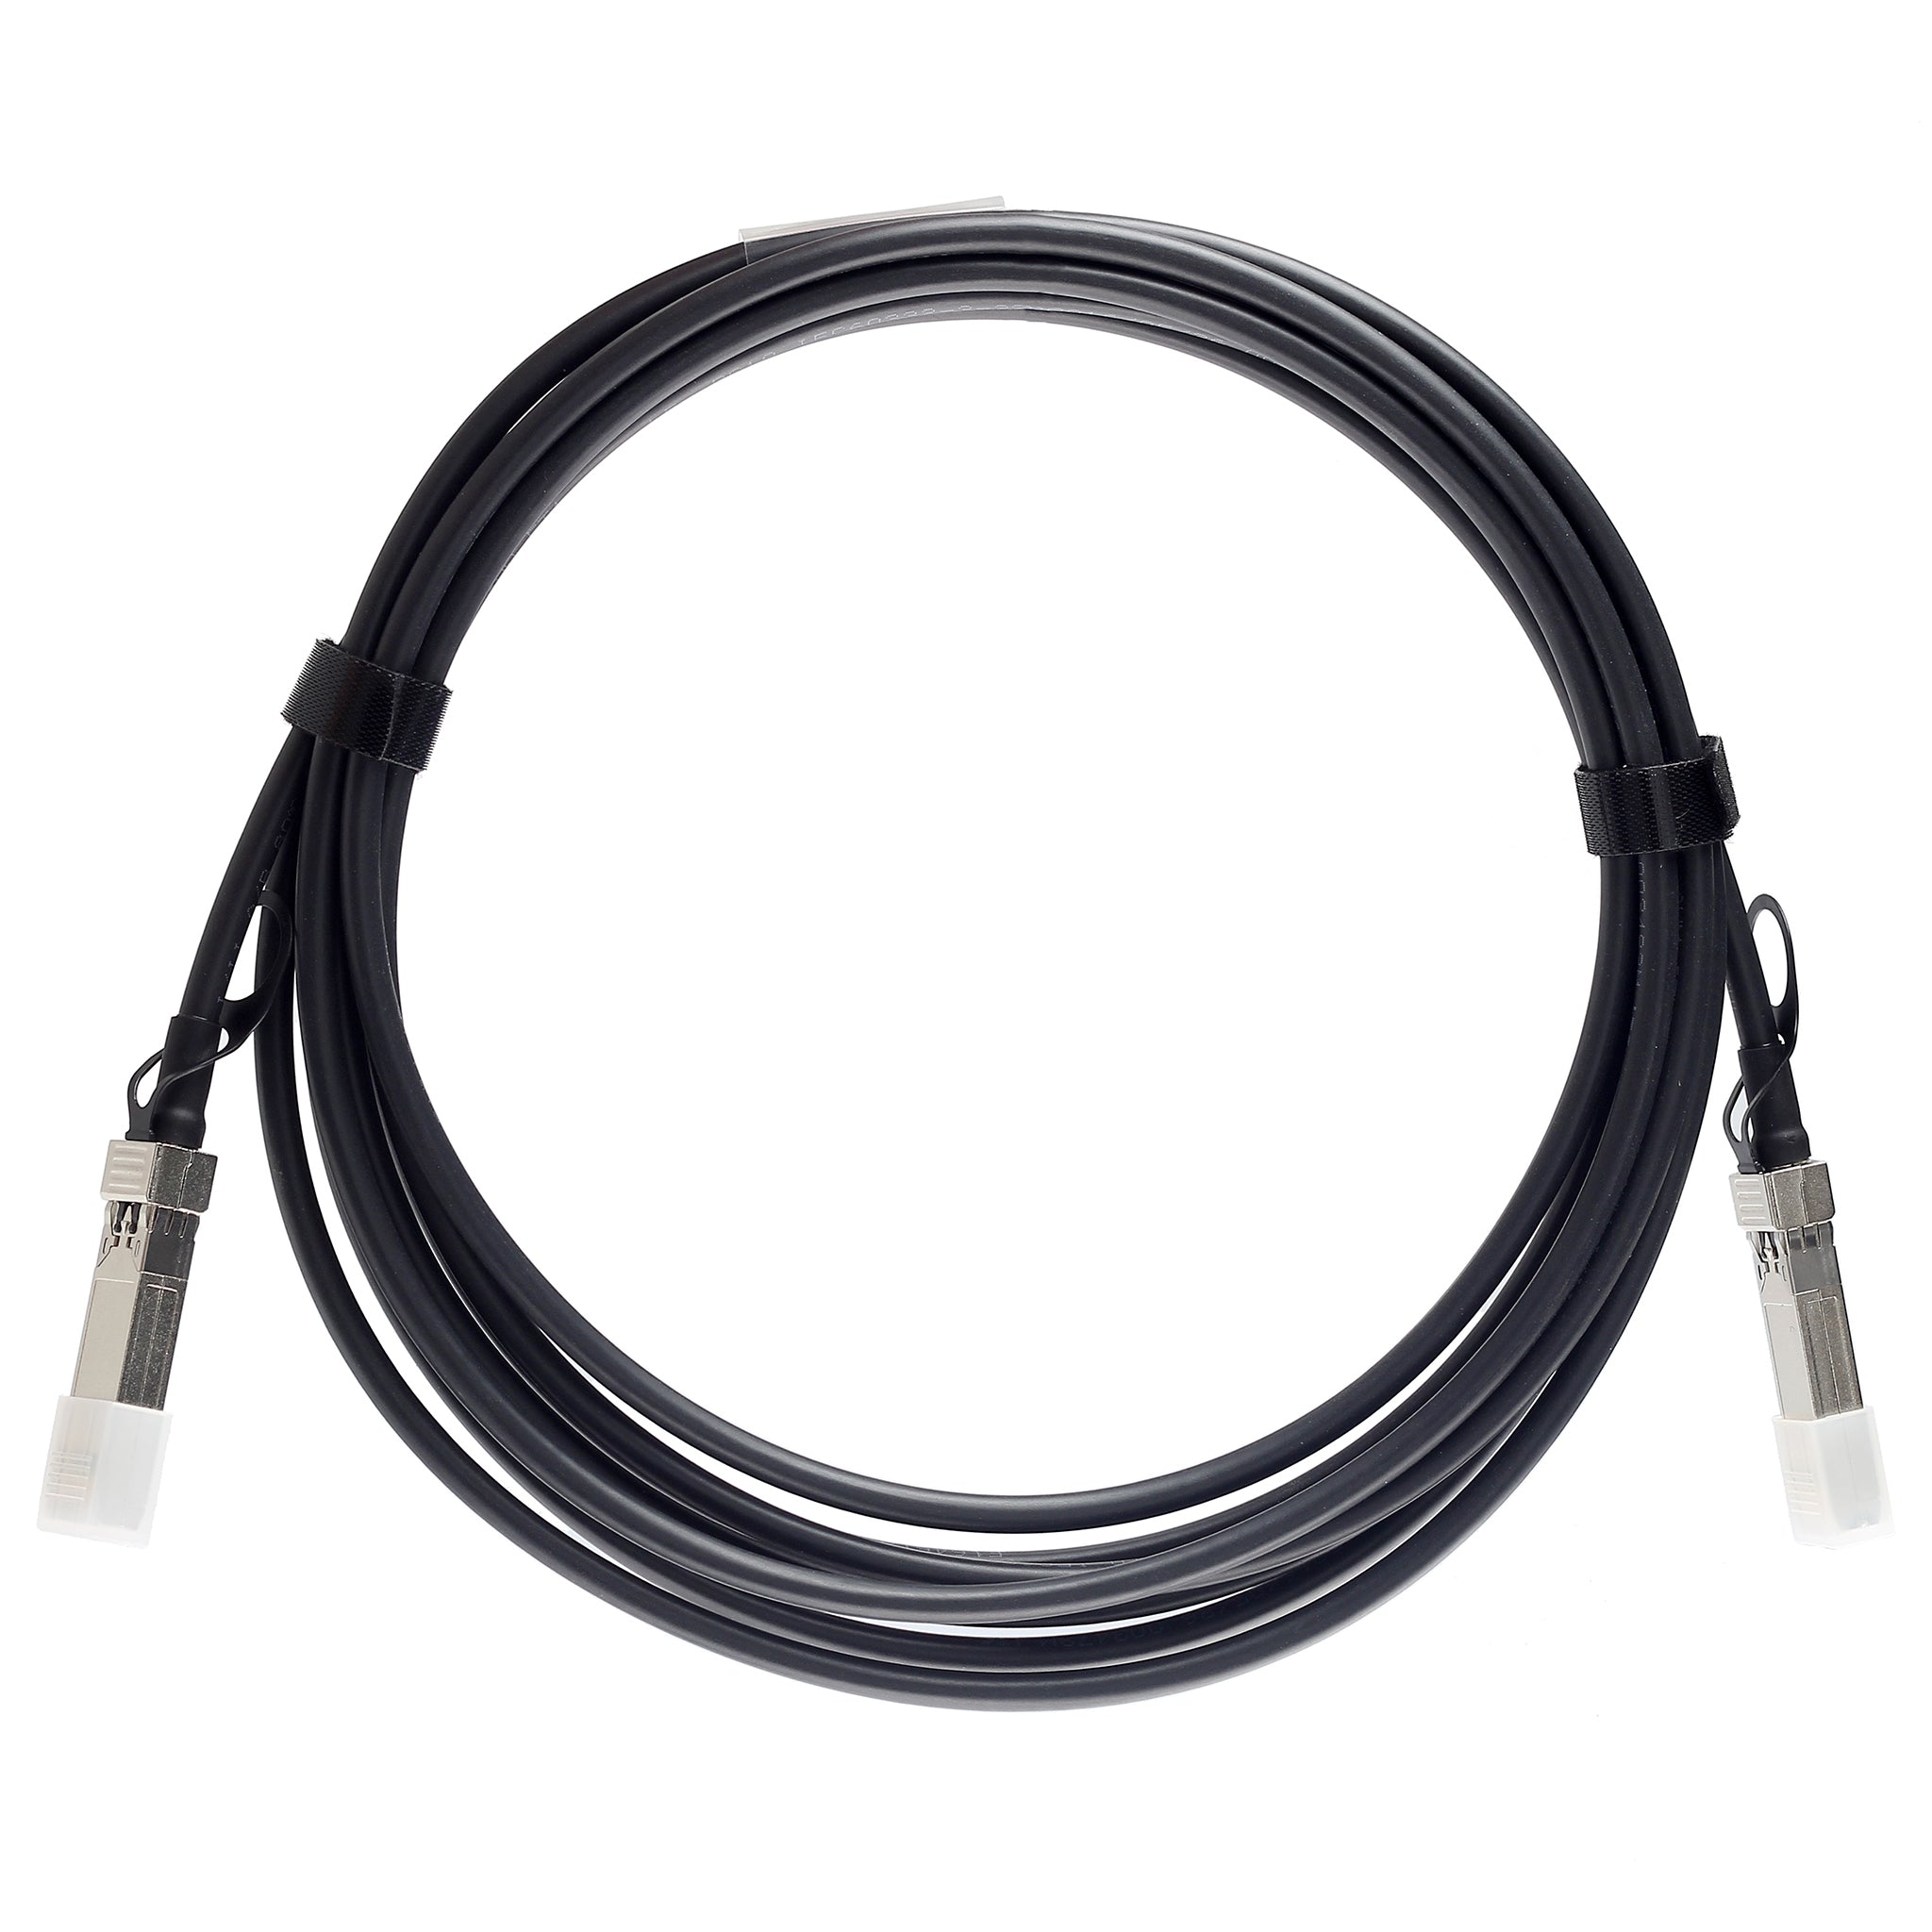 QSFP-100G-C2M-C - 2m Alcatel-Lucent (Nokia) Compatible 100G QSFP28 Passive Direct Attach Copper Twinax Cable